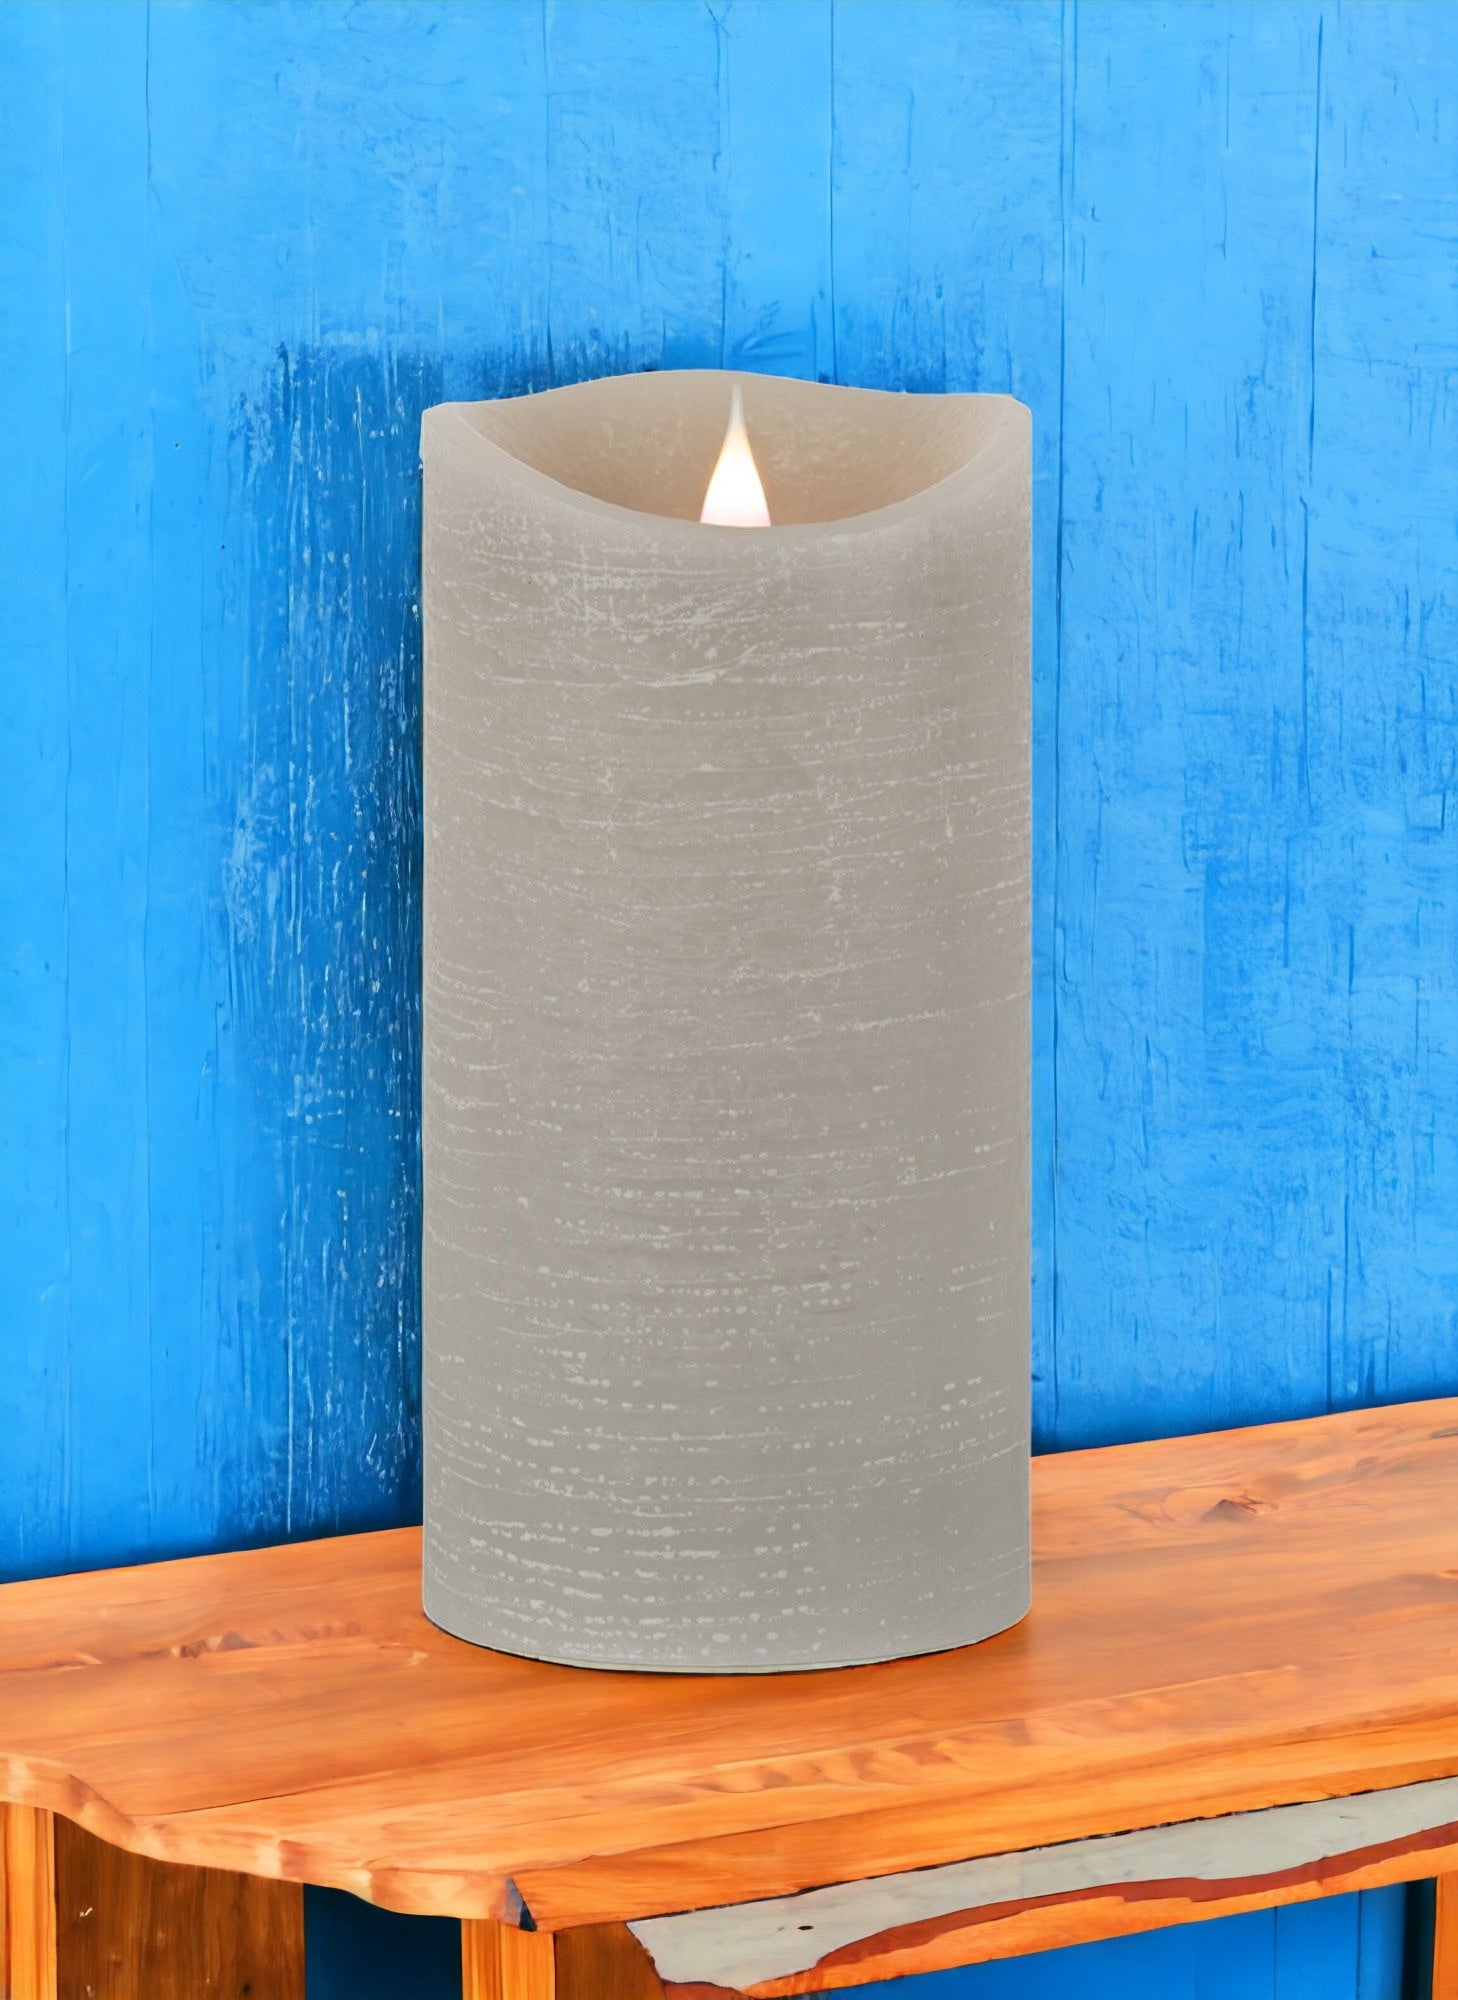 7" Gray Flameless Pillar Candle